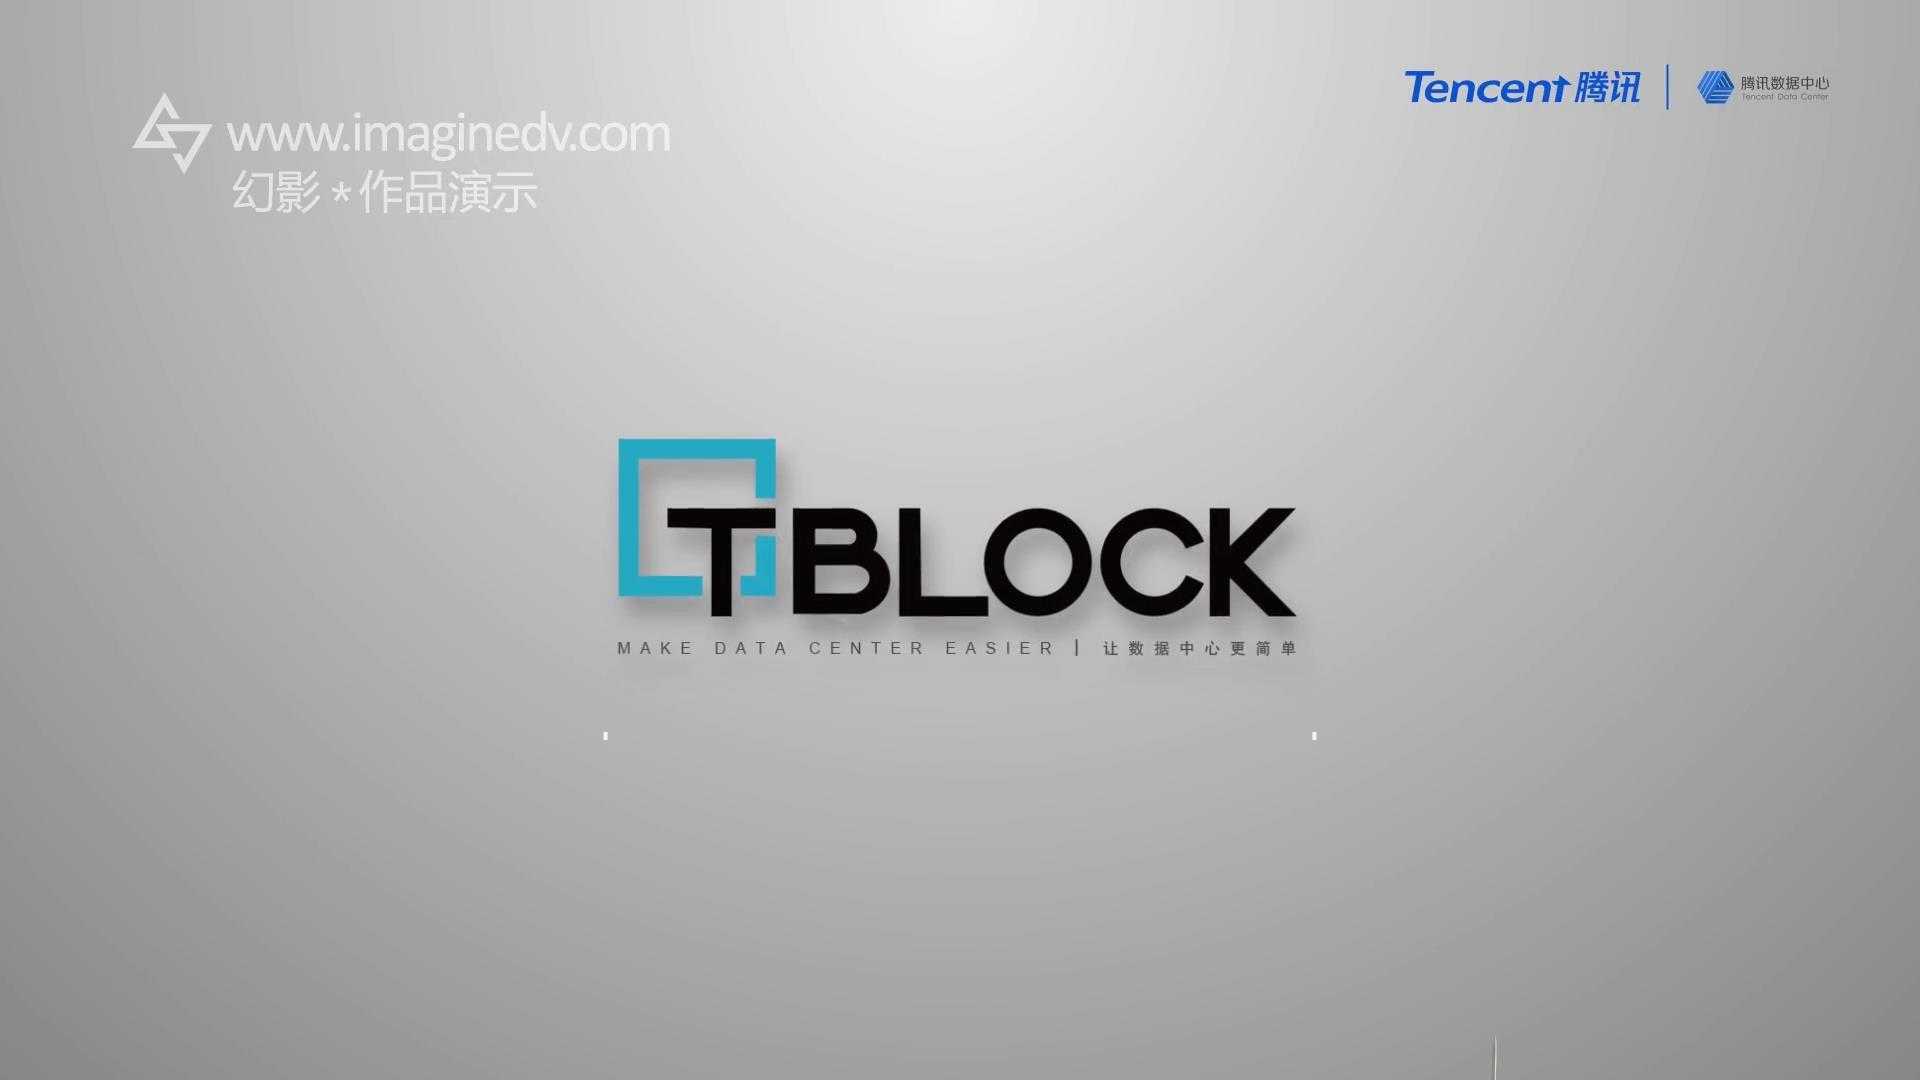 腾讯数据中心Mini T-block